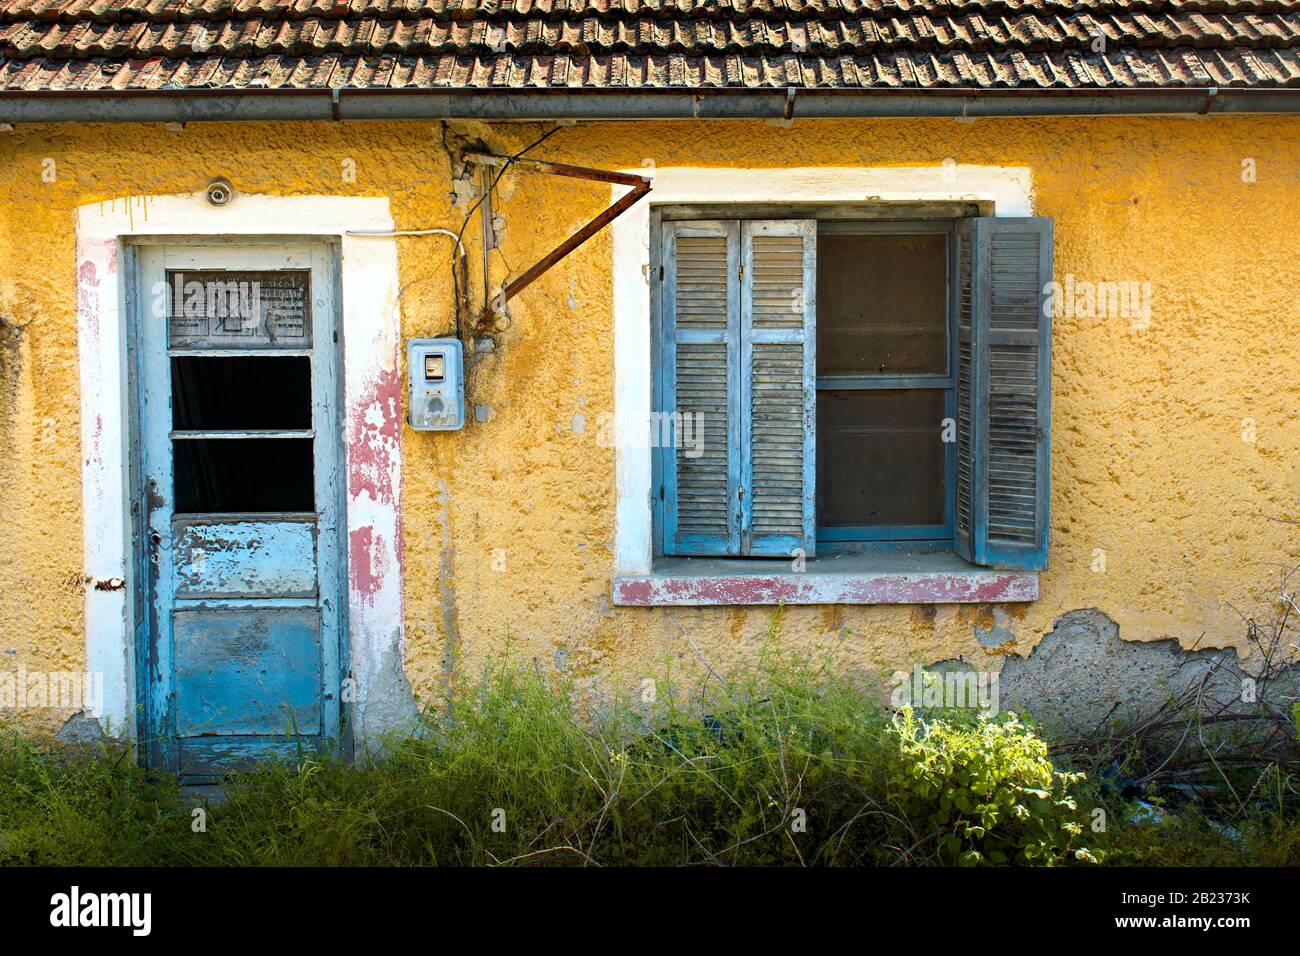 abbandonata, vecchia, casa con piastrelle pareti gialle e vetro rotto Foto Stock